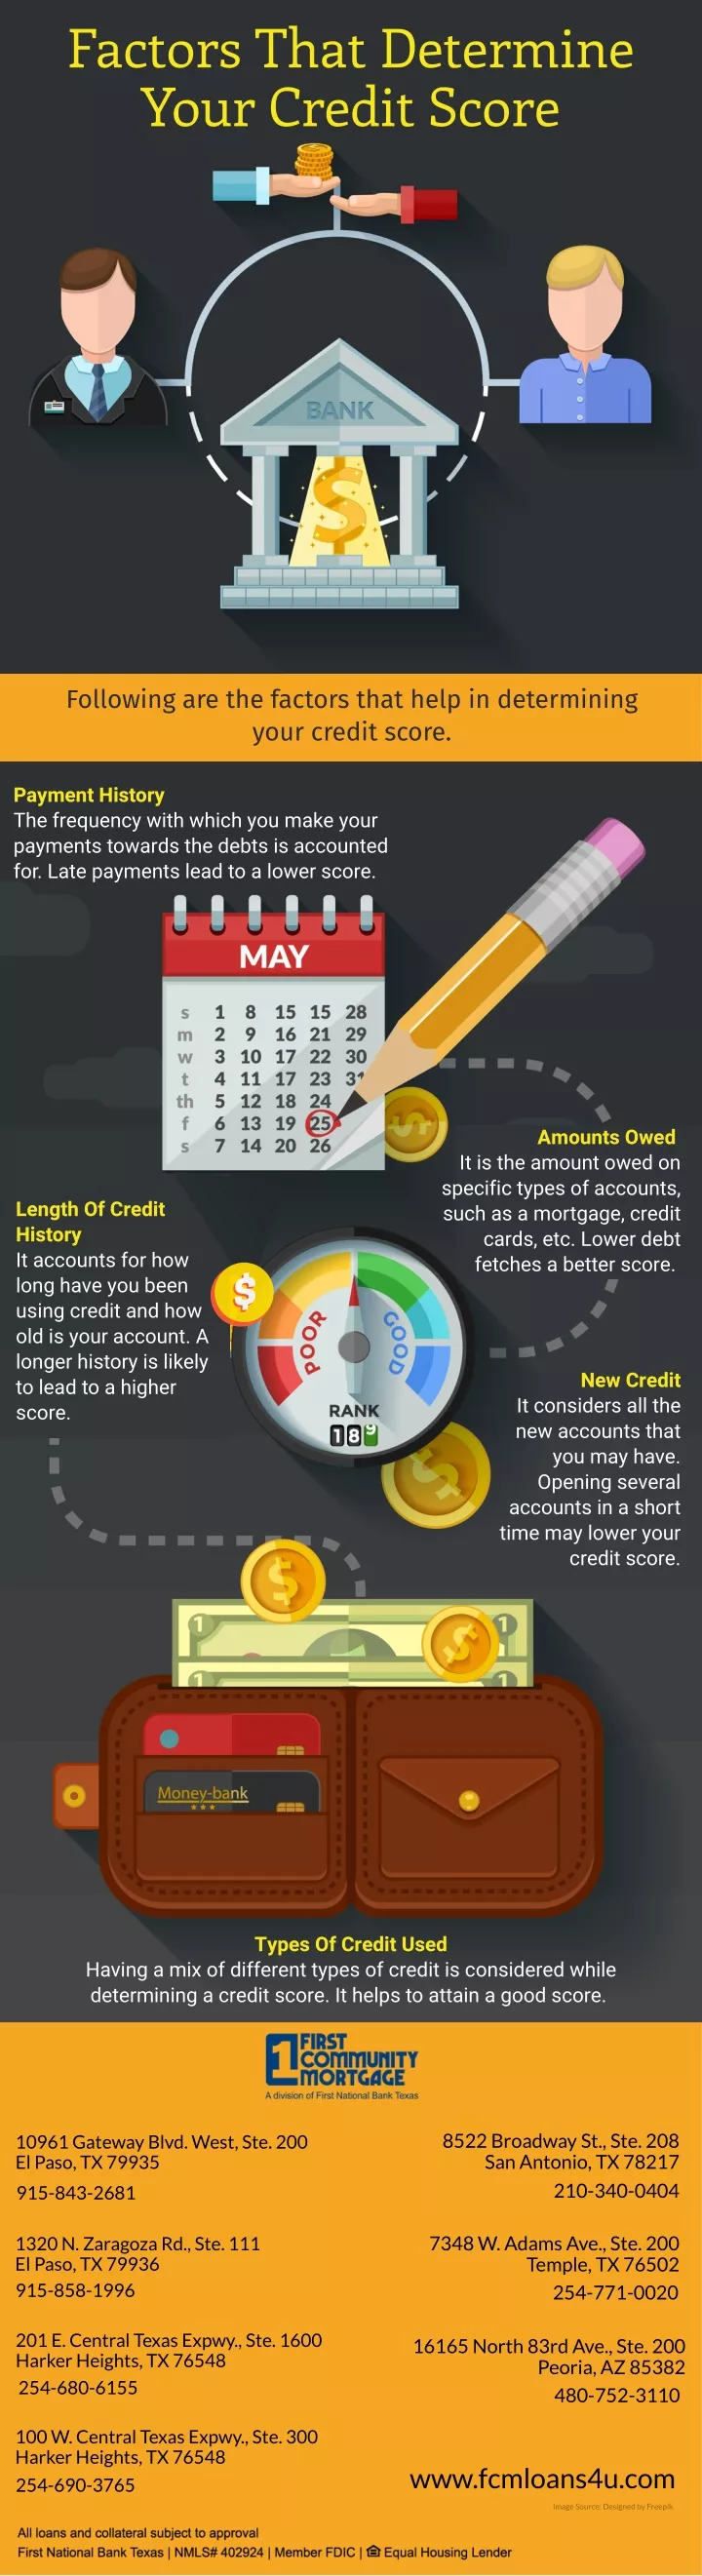 factors that determine your credit score